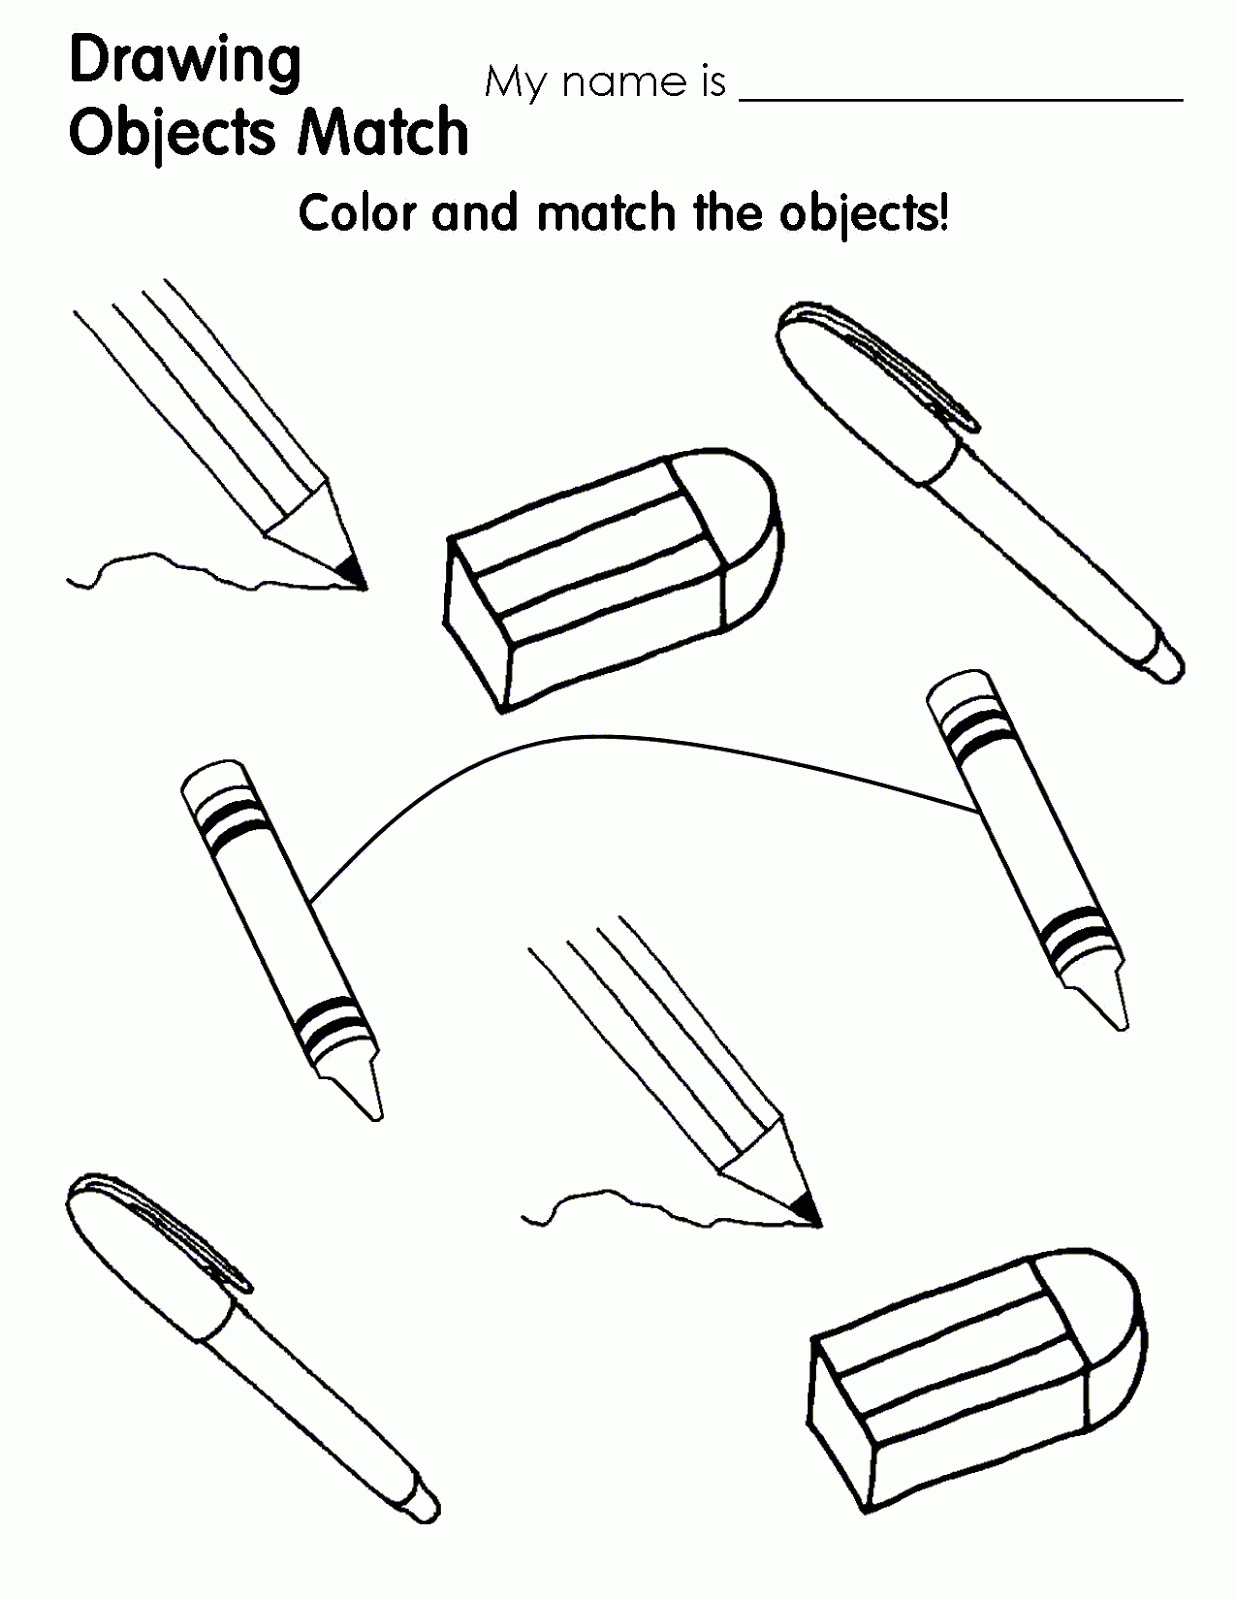 Pen pencil book. School objects раскраска. Classroom objects Worksheets. School objects Worksheets. School objects Worksheets for Kids.